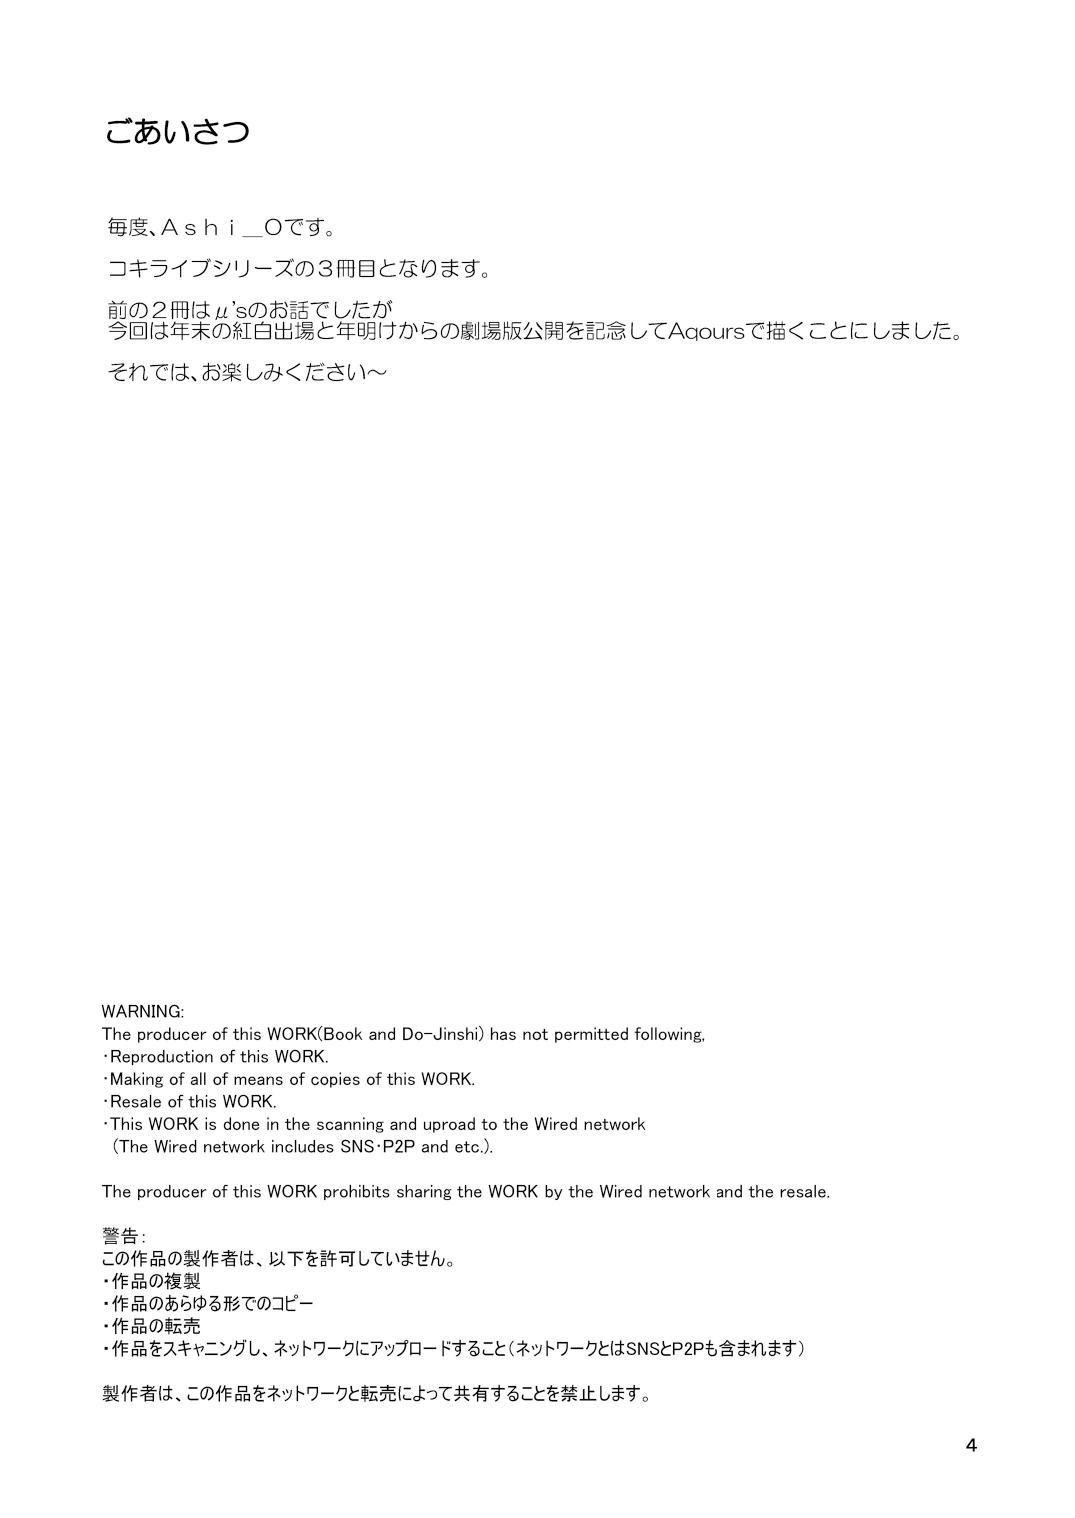 Teenpussy Koki Live! #3 Inu o Hirou? - Love live sunshine Shesafreak - Page 4